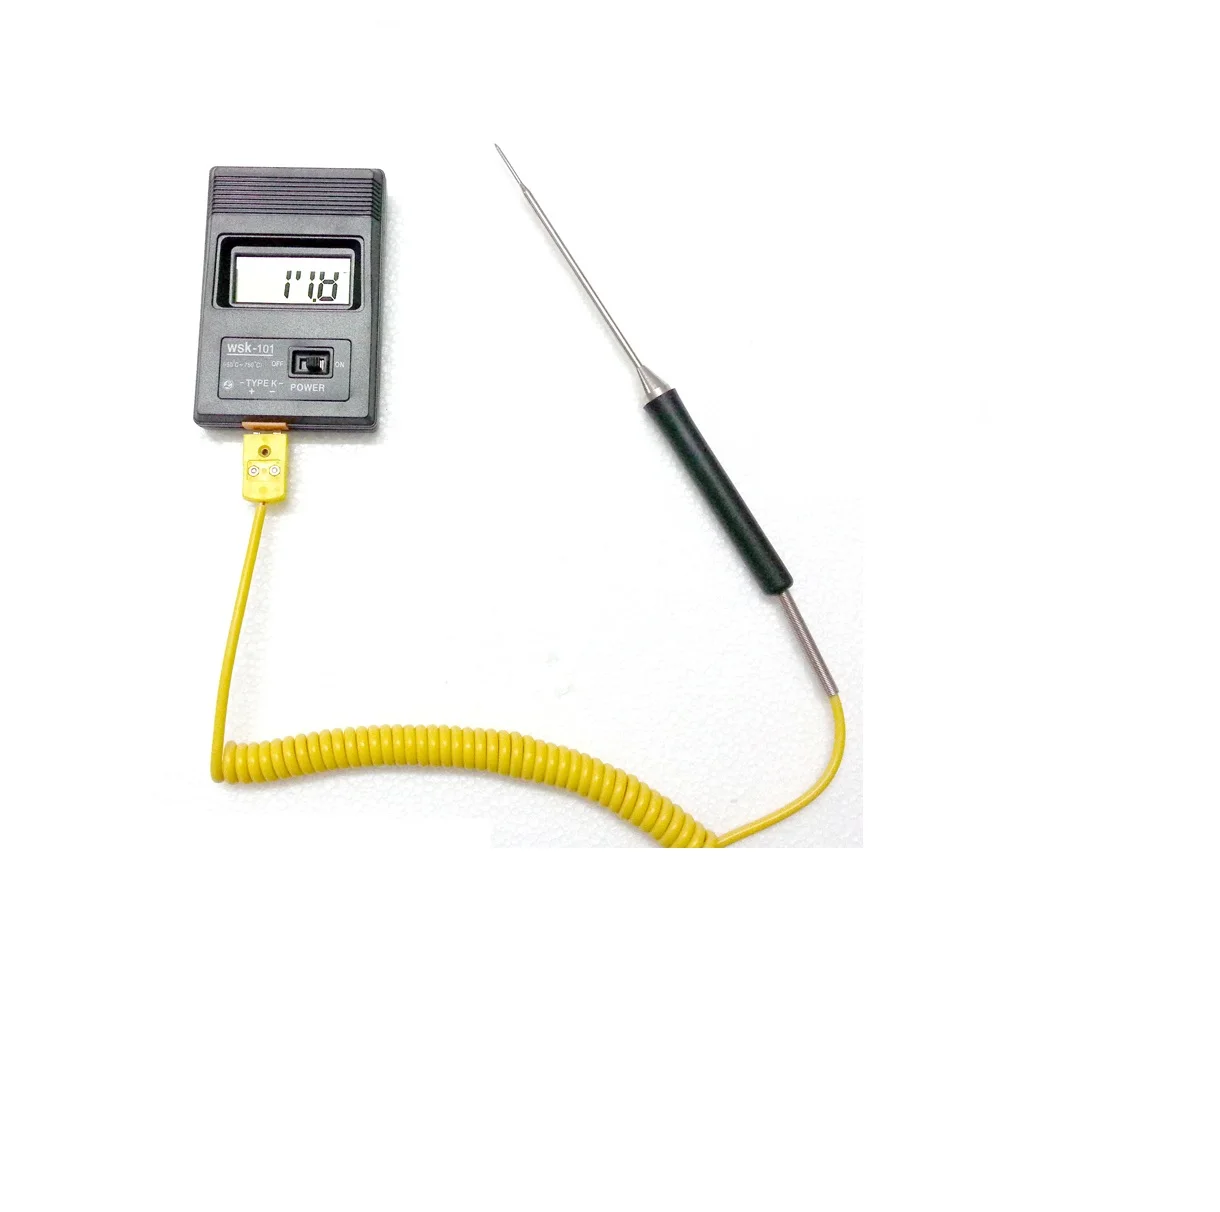 K型针探头热电偶，软电缆黄色插头